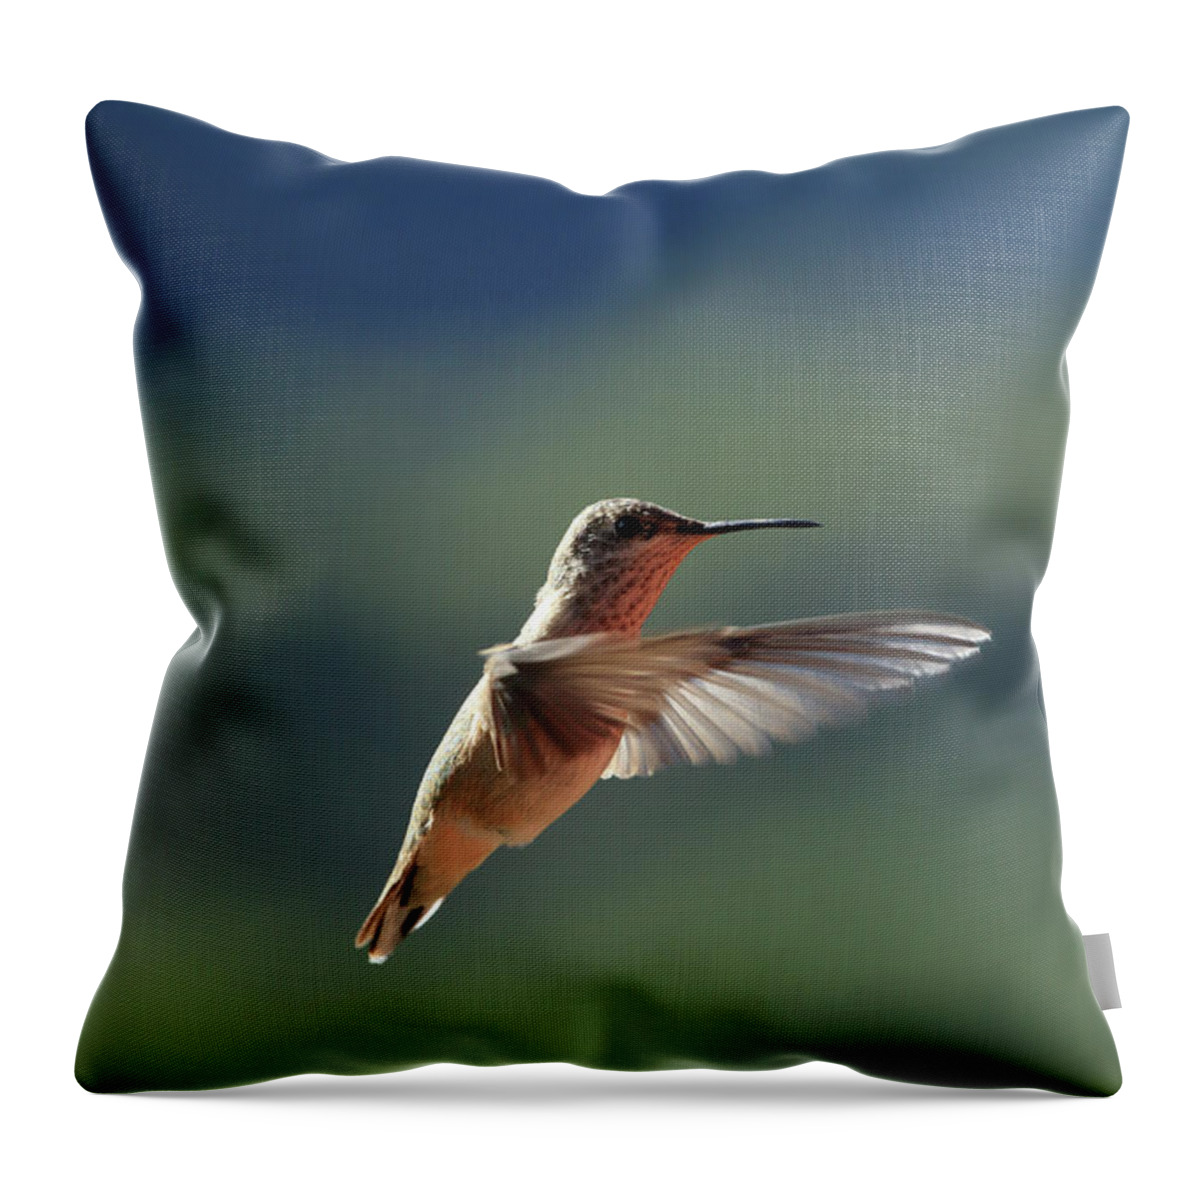 Bird Throw Pillow featuring the photograph Hummingbird by David Diaz